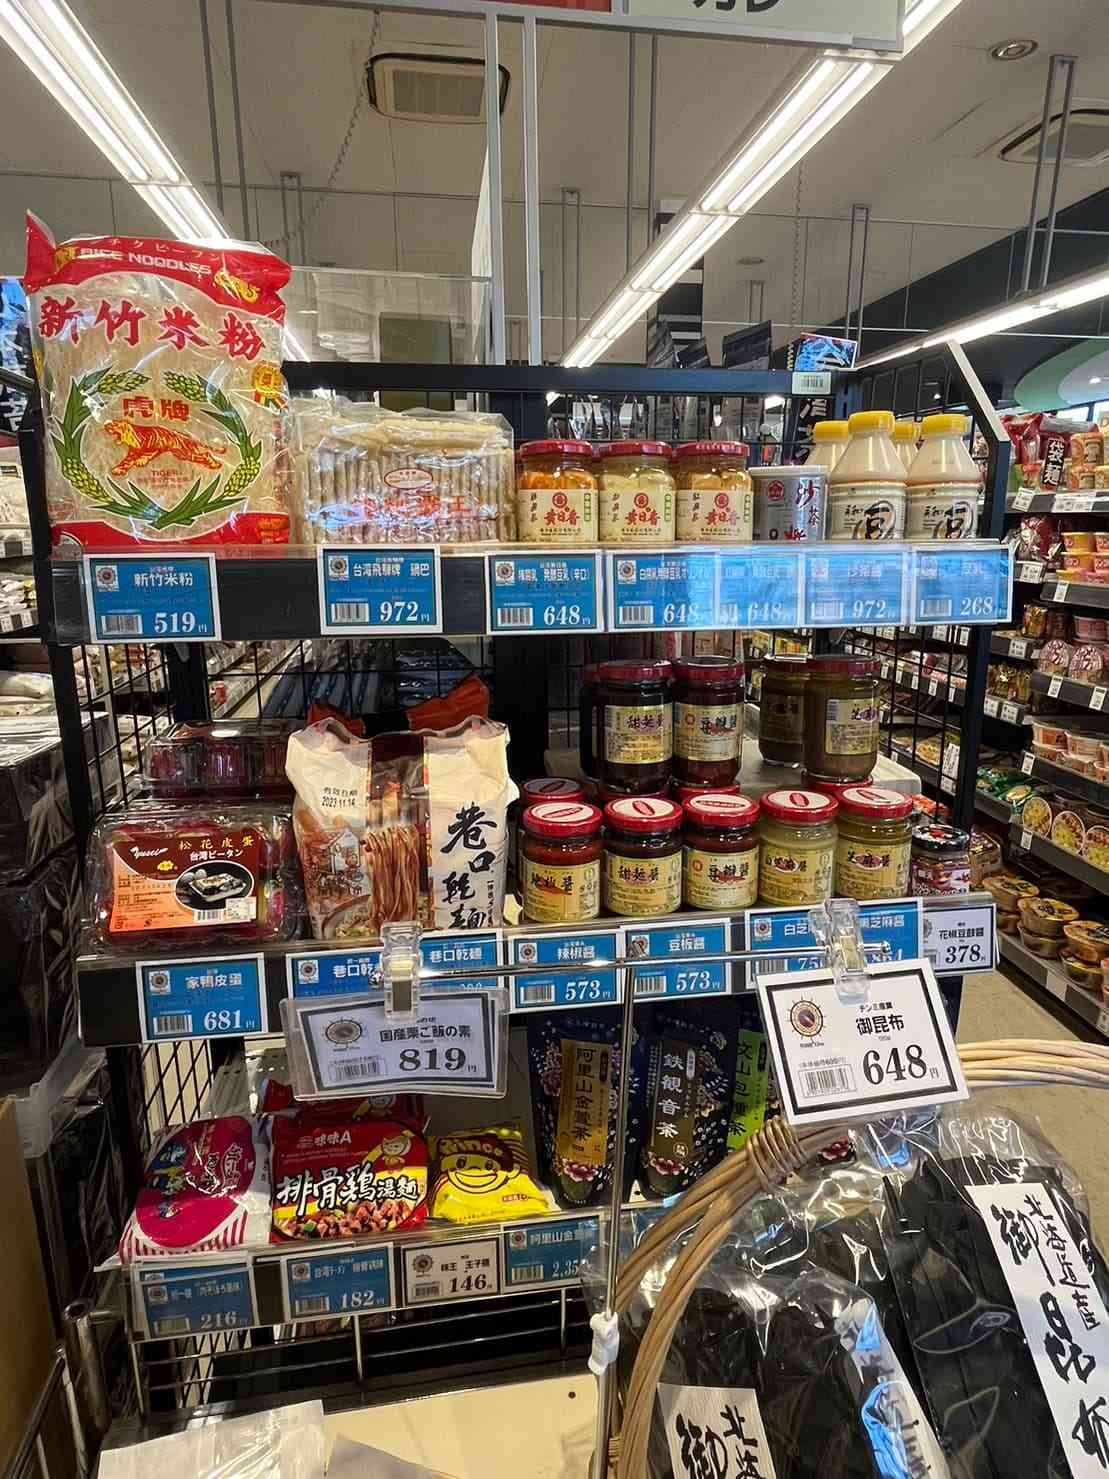 熊本のスーパーには台湾食材のコーナーが設けられていました